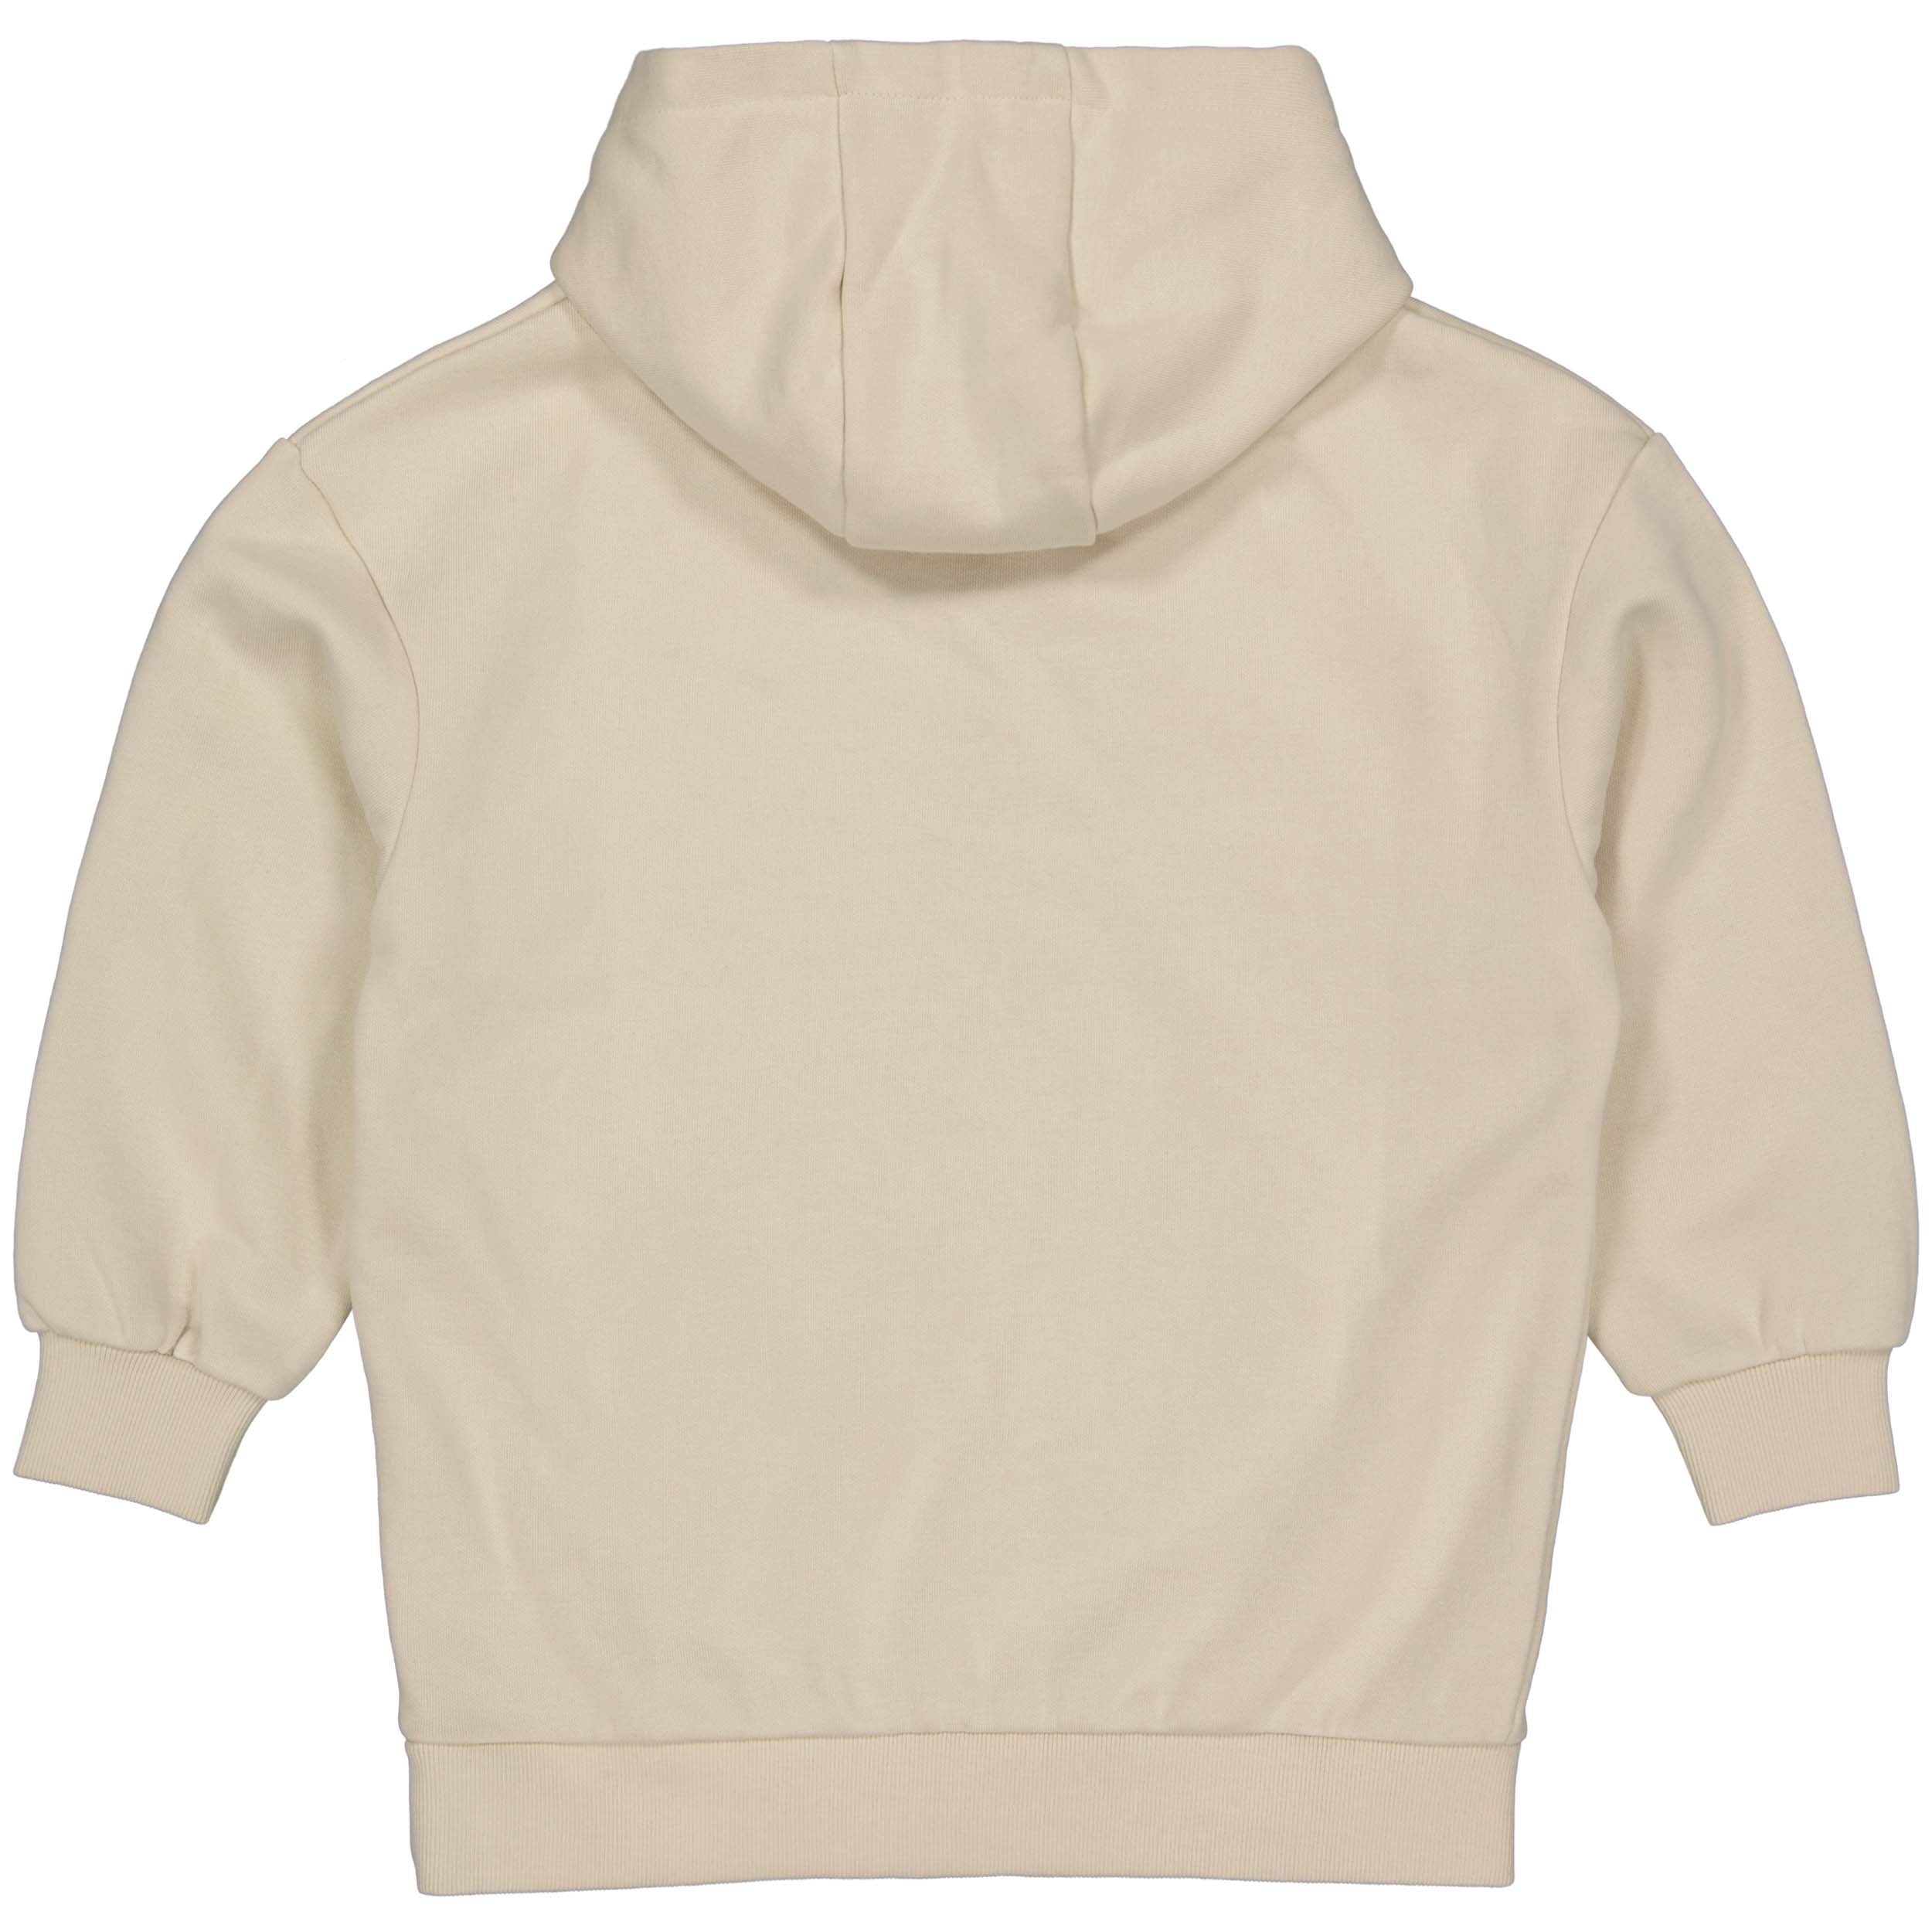 Unisexs Hooded Sweater Kit van House of Artists in de kleur Kit in maat 170-176.